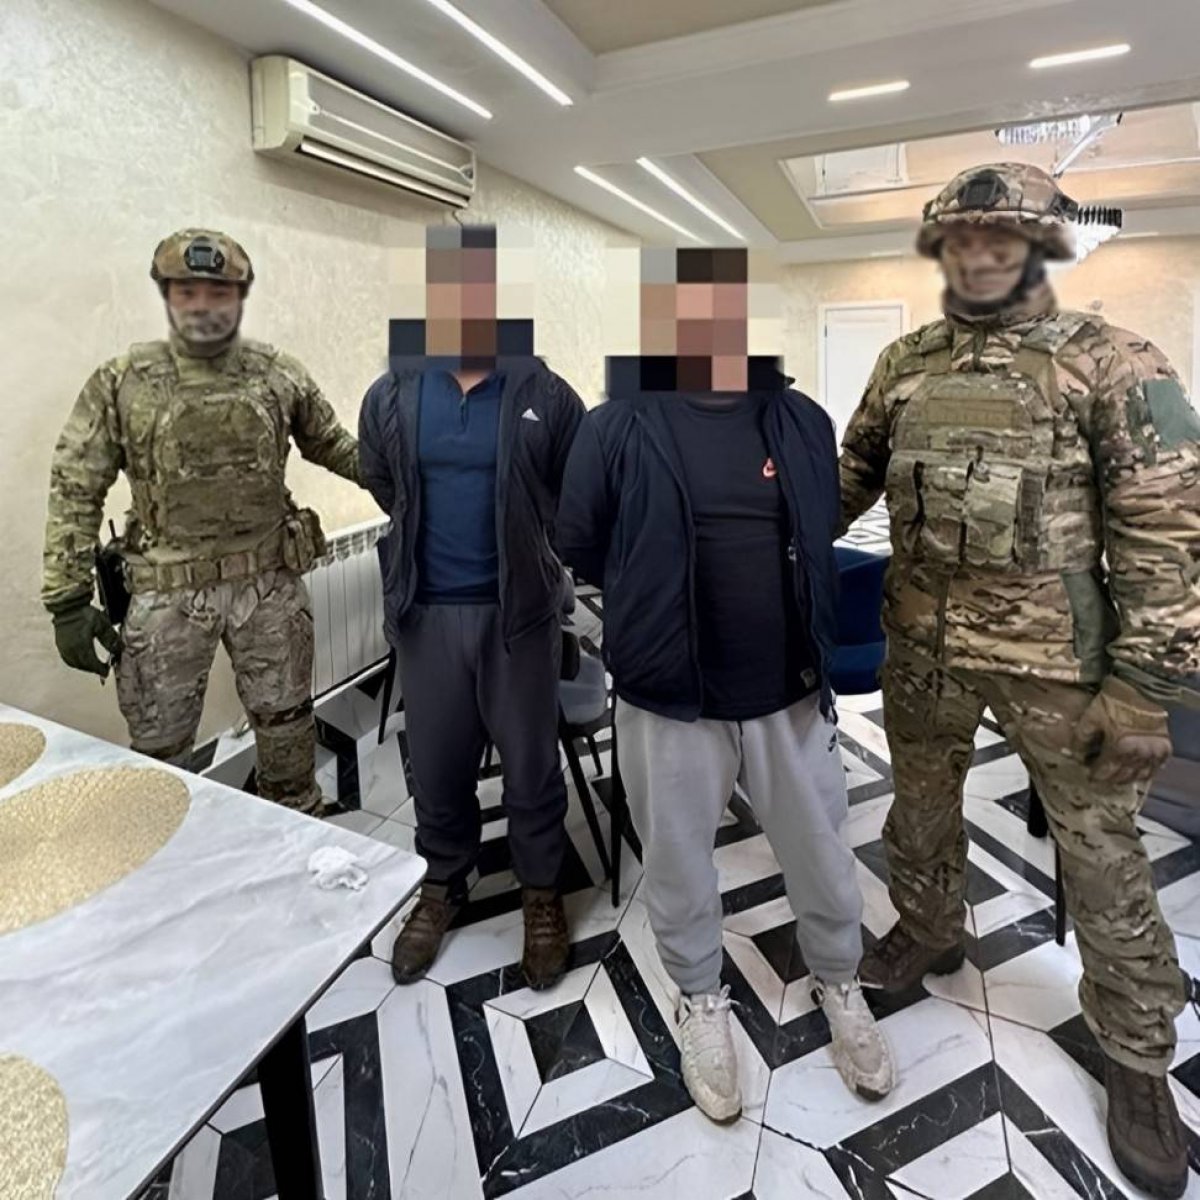 В Европу через Алматы пытались нелегально добраться граждане Афганистана